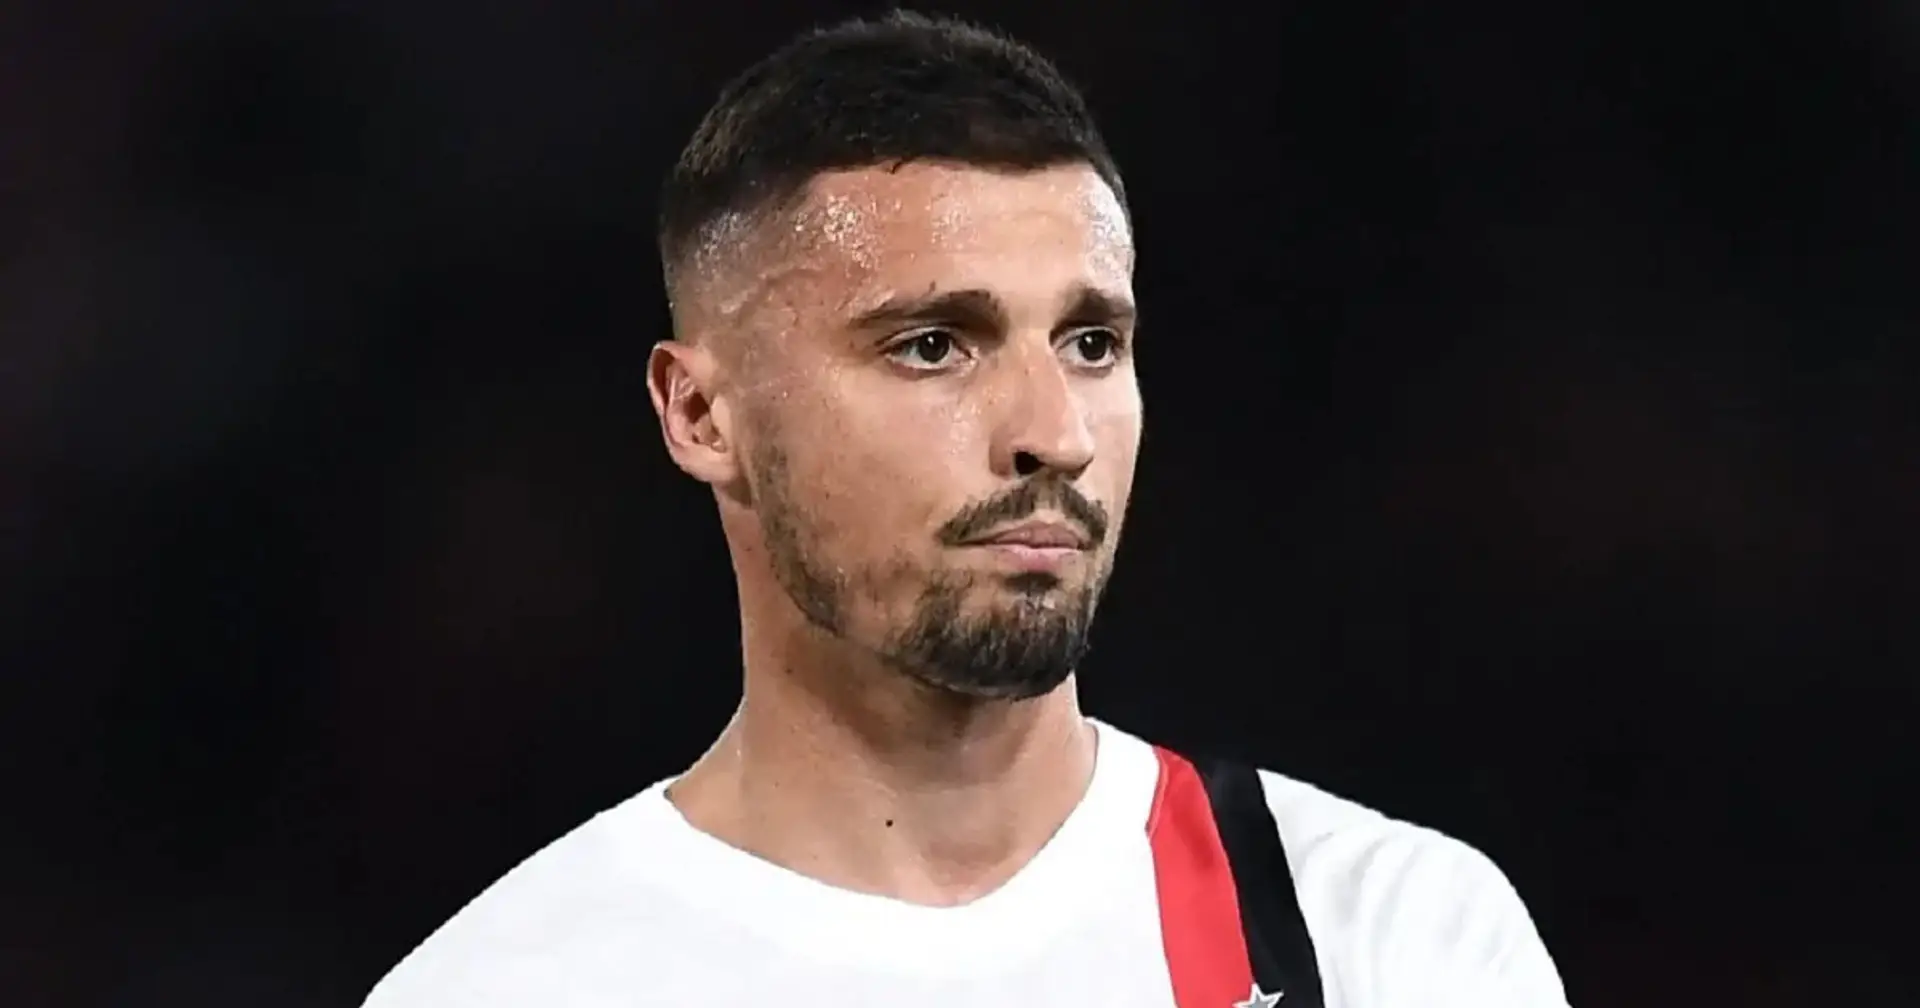 Krunic a rischio forfait anche per Empoli-Milan: gli aggiornamenti sulle condizioni del centrocampista bosniaco